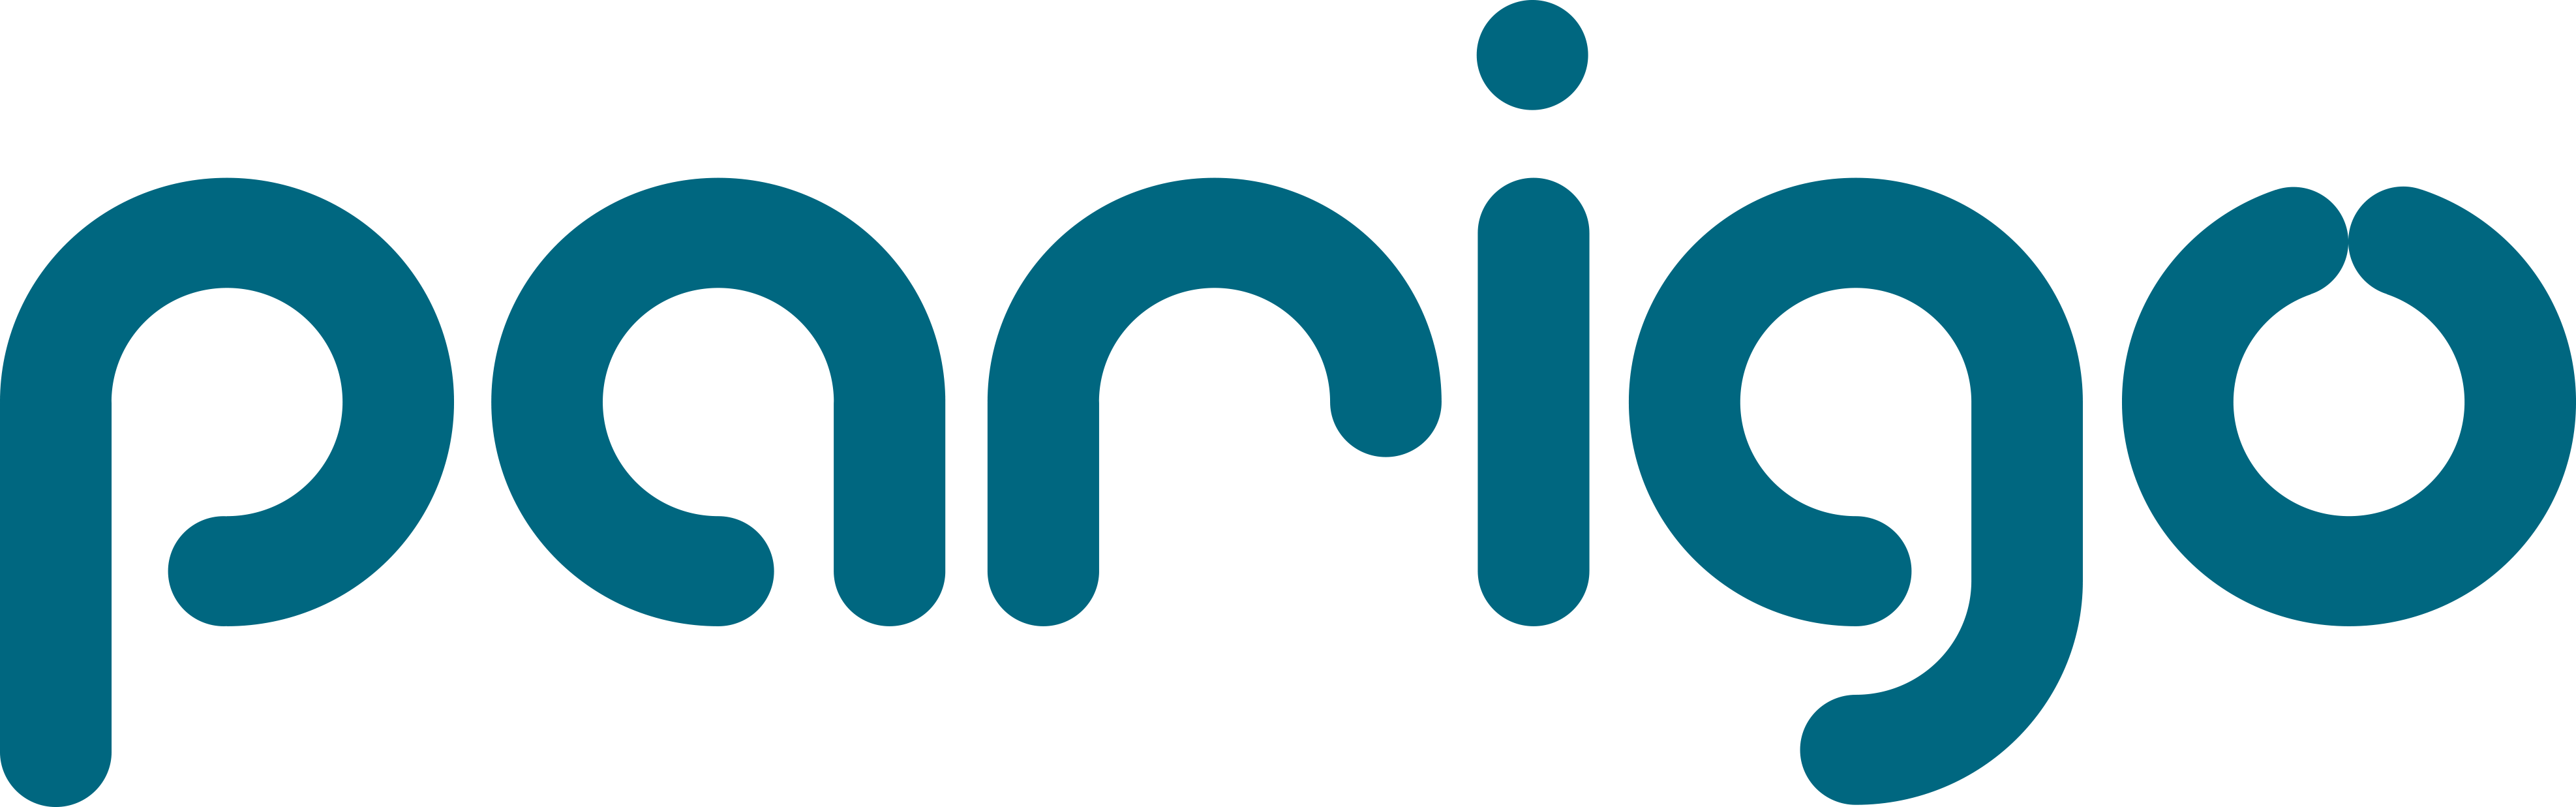 logo parigo